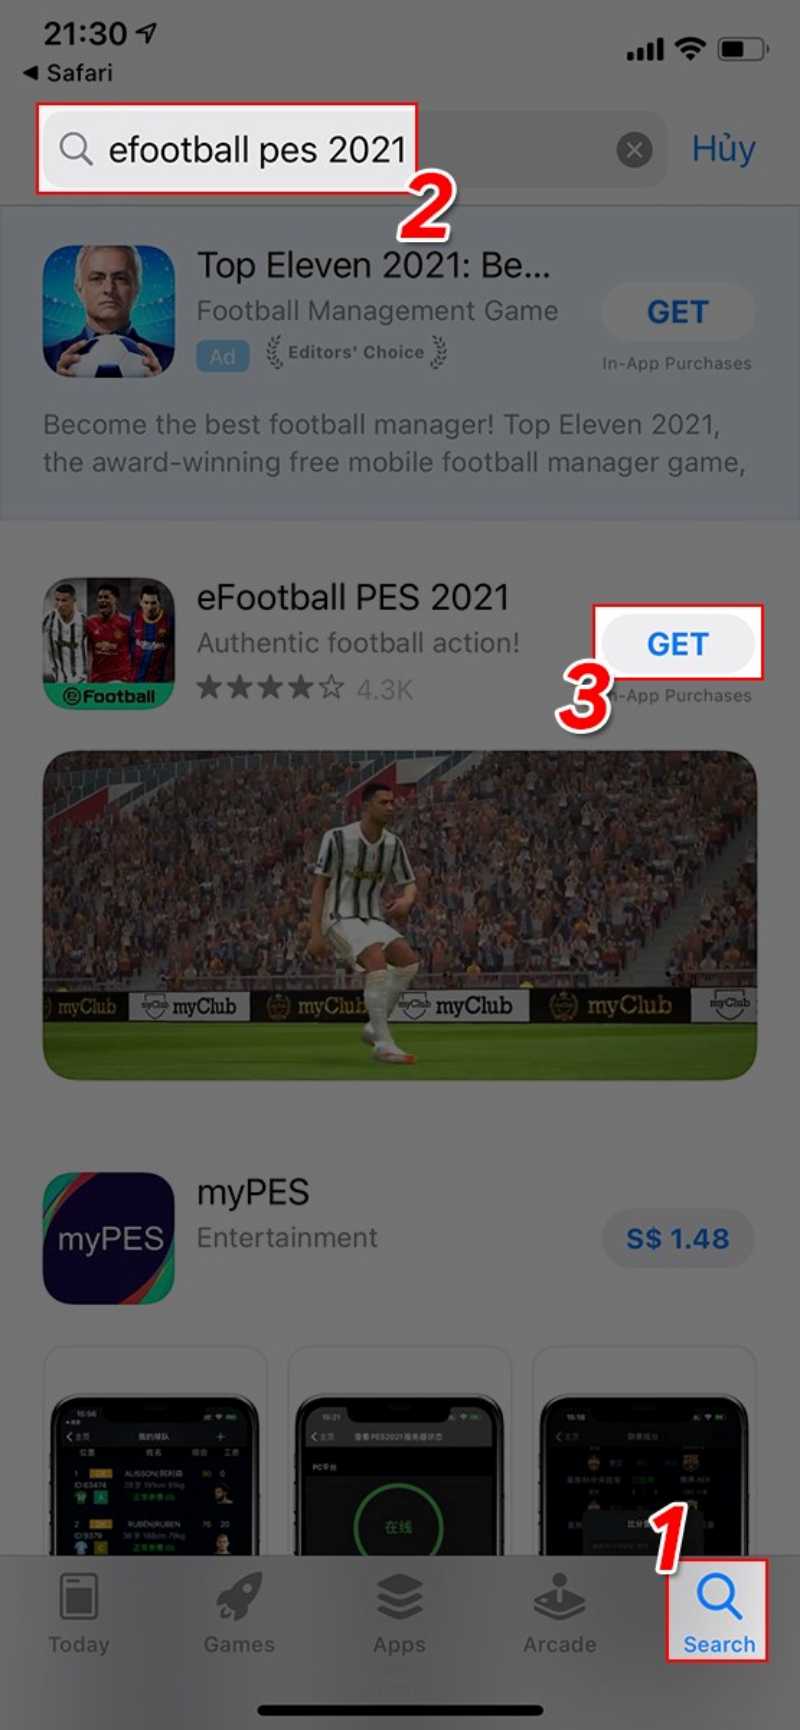 Mở AppStore tìm kiếm game eFootball PES 2021 và nhấn GET để cài trò chơi